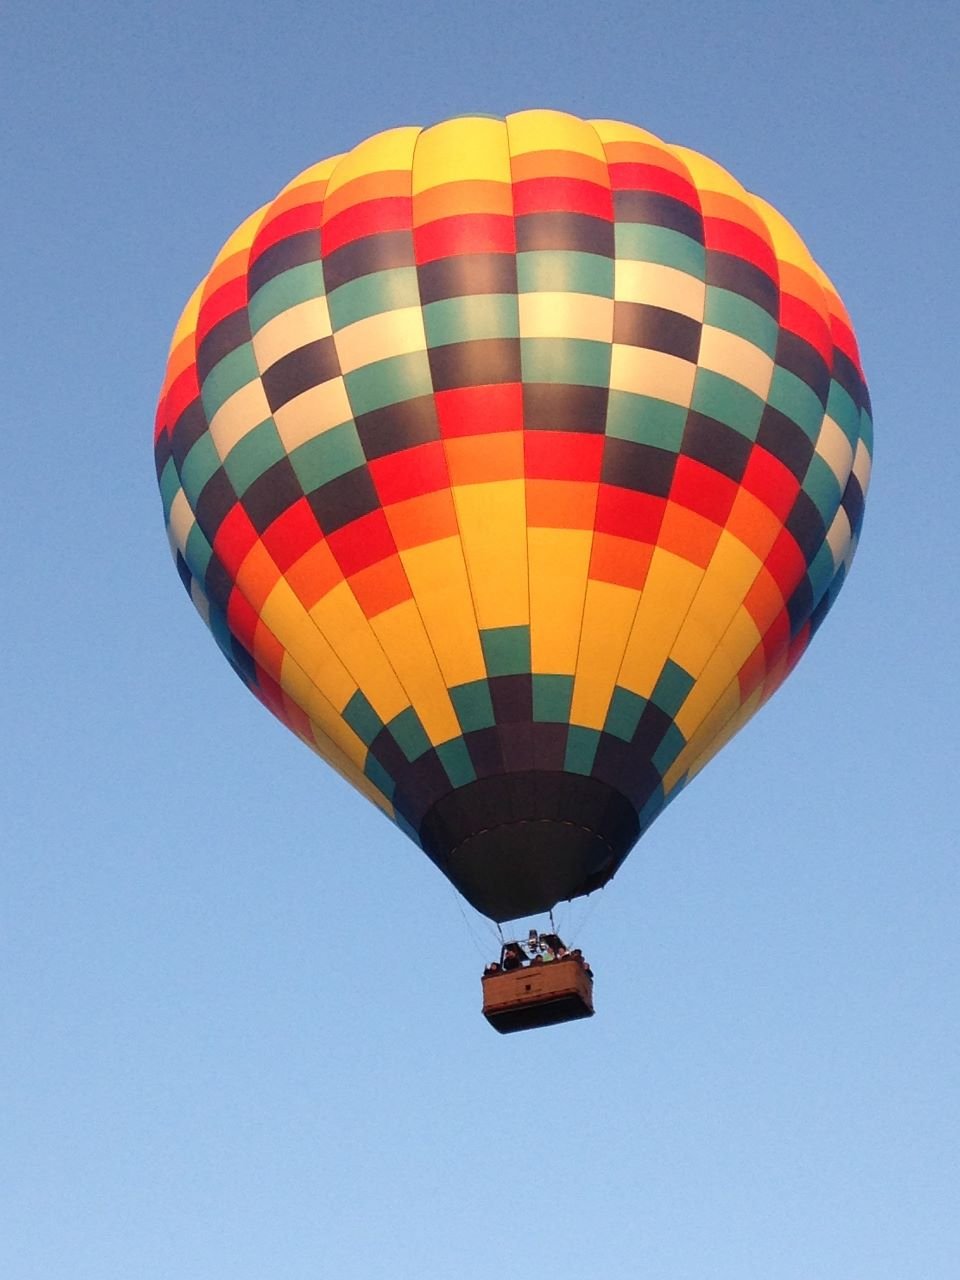 hot air ballon rides.jpeg